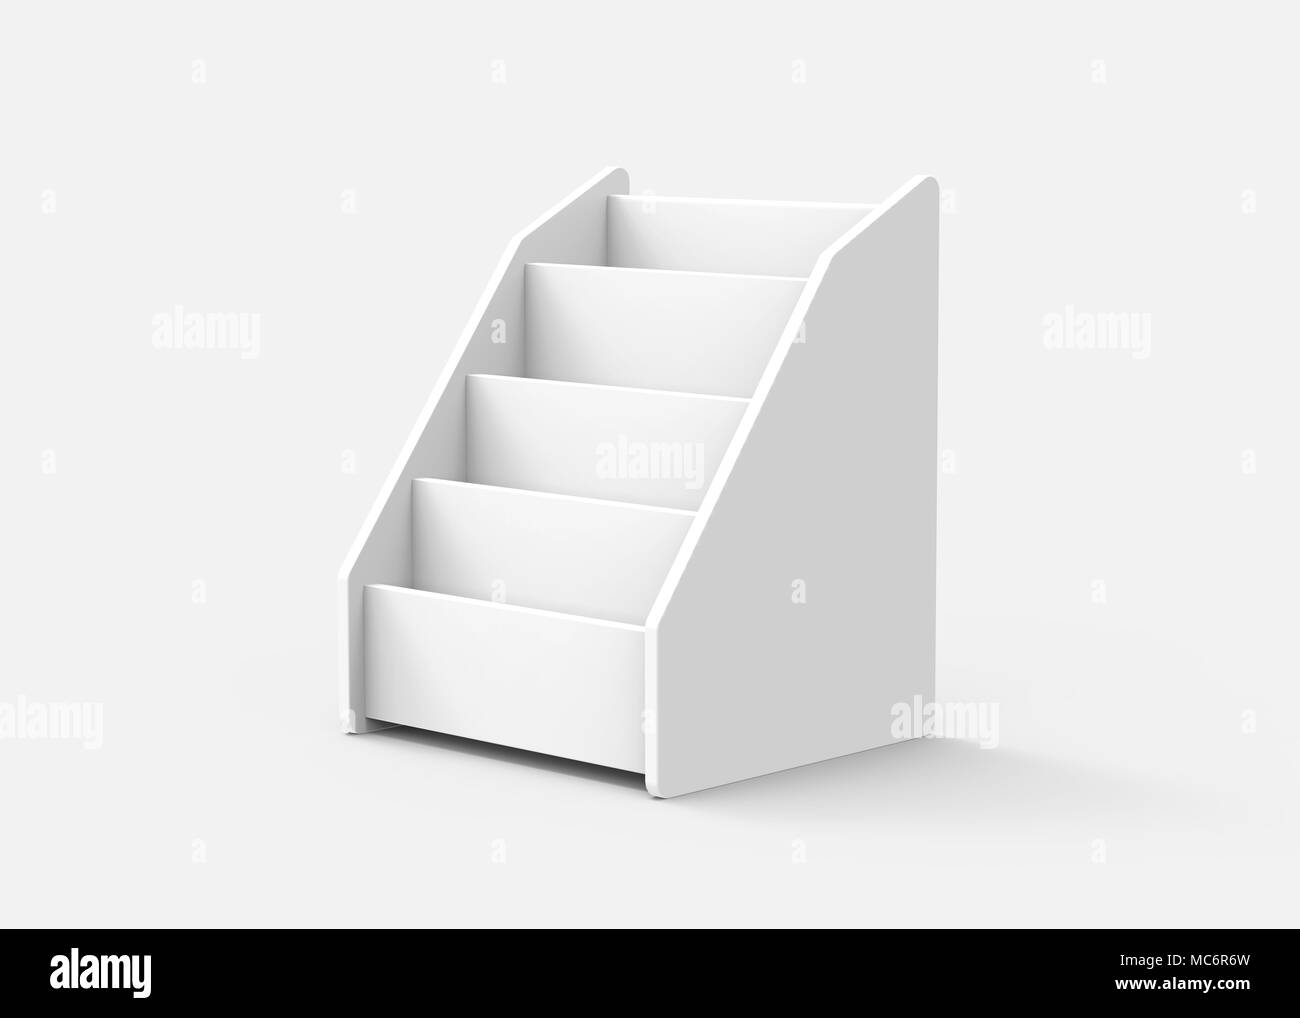 Table en carton, rack stand blanc rendu 3D ou les feuilles de papier pour brochure Banque D'Images